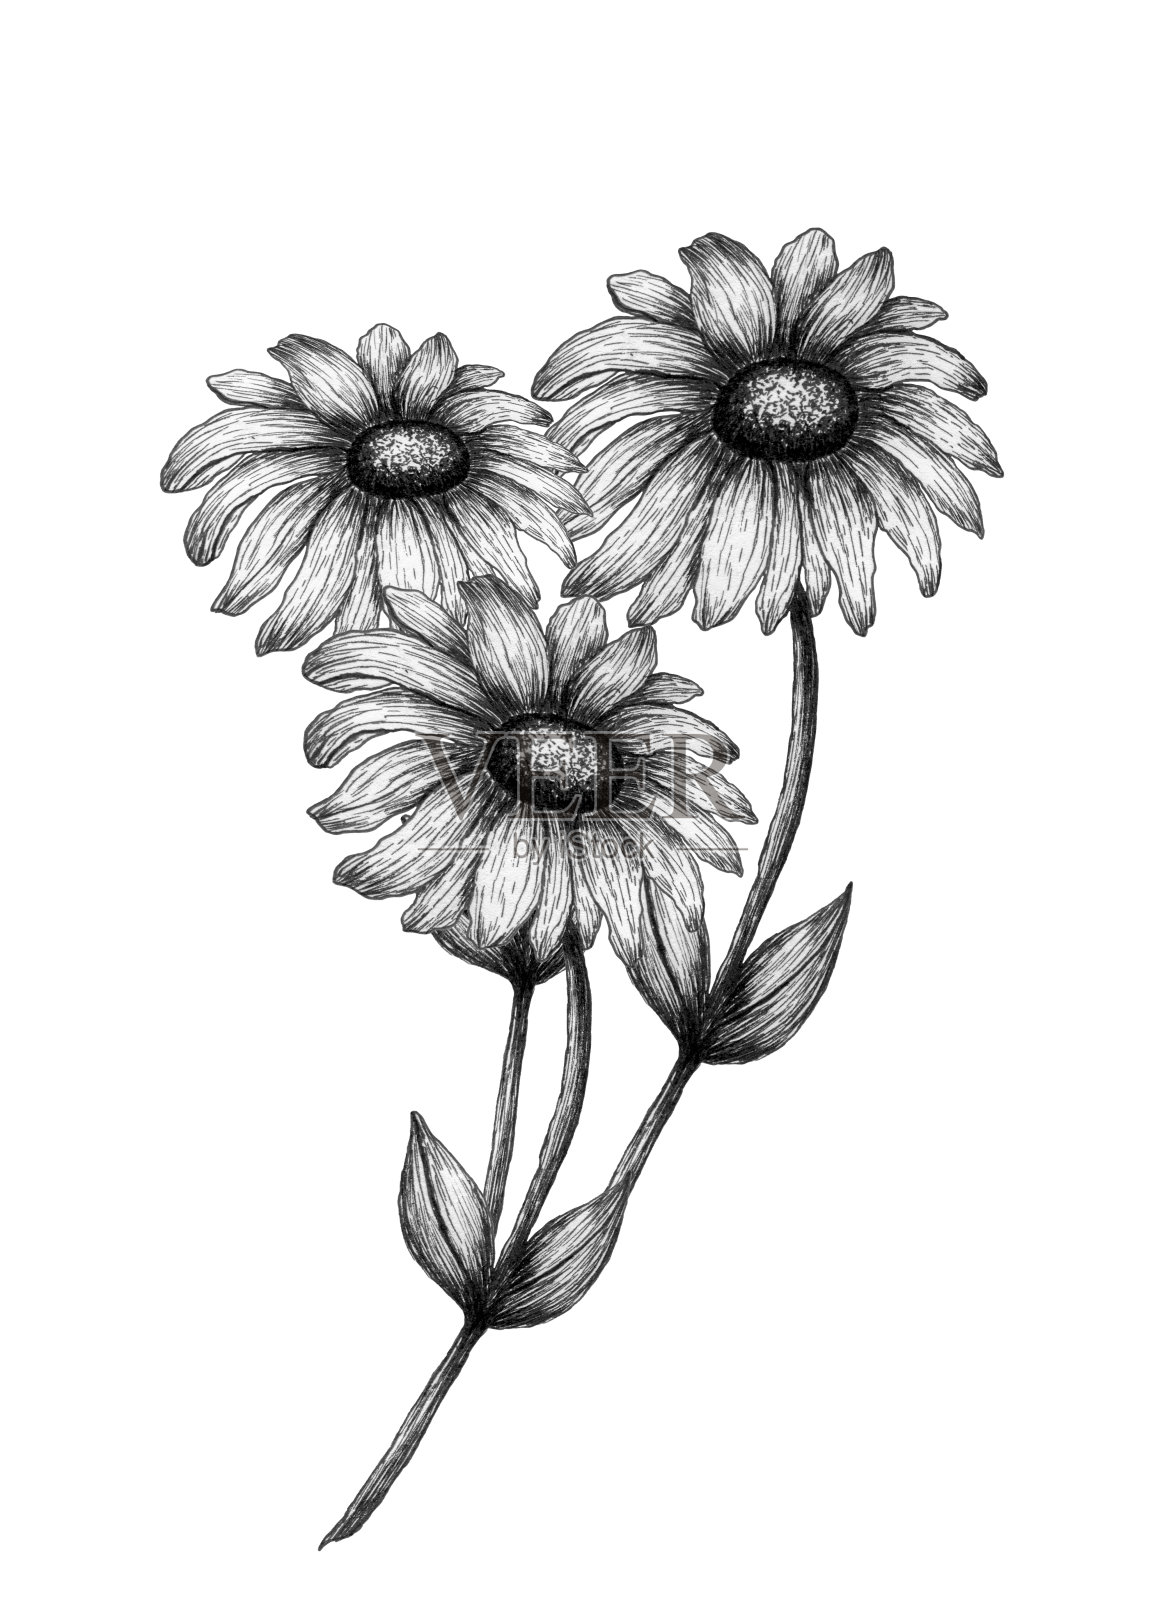 复古雏菊花束，单色花卉插图与手绘野花在墨水素描插画图片素材